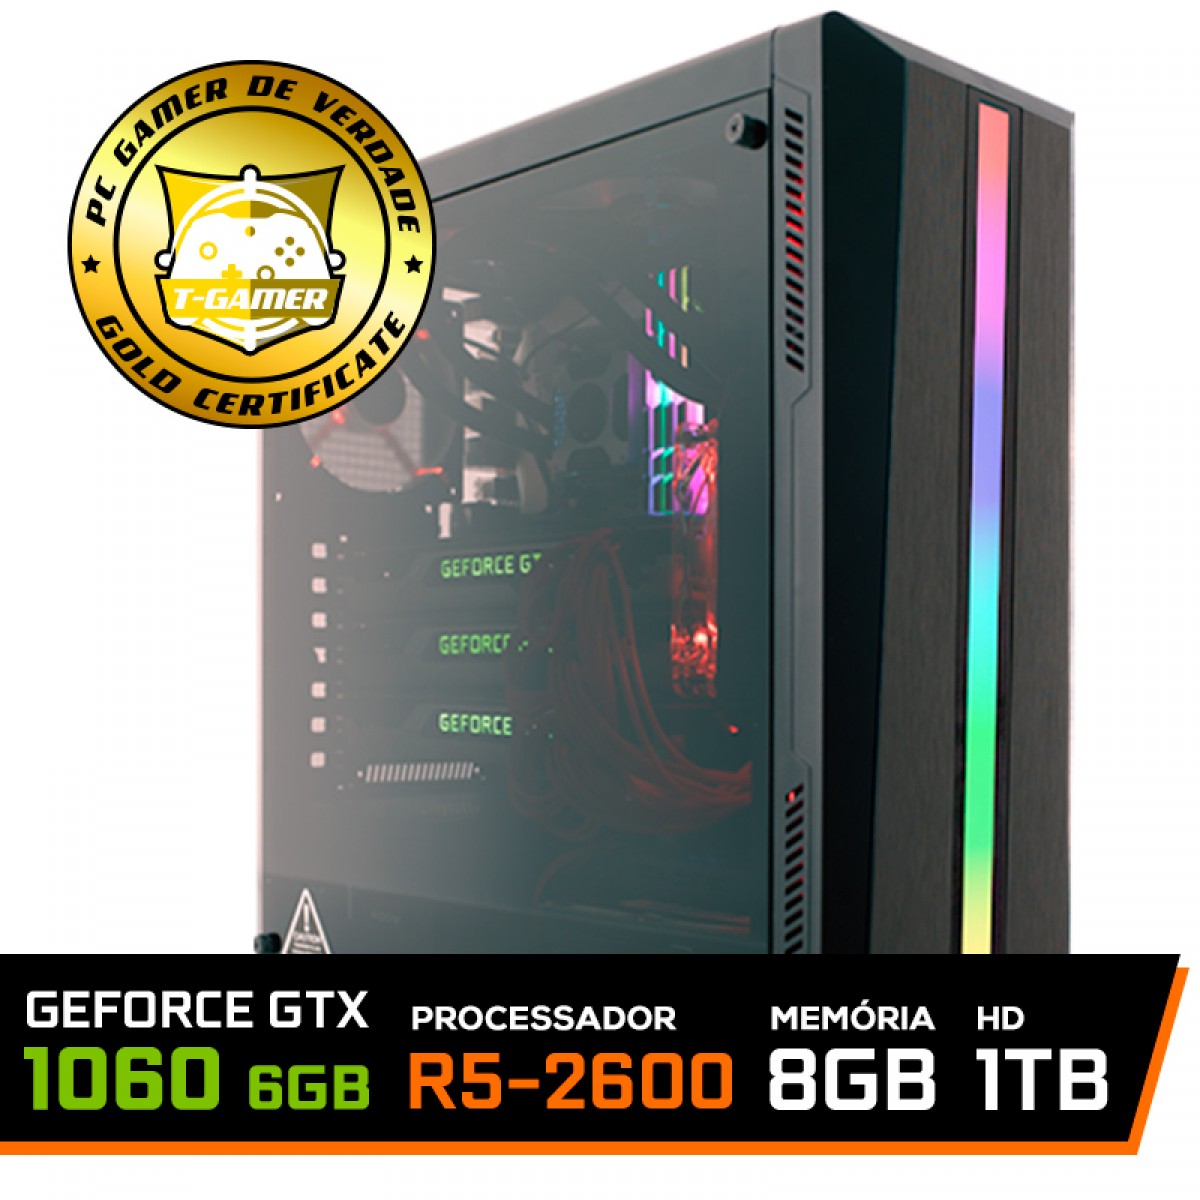 Geforce GTX 1060 6GB 